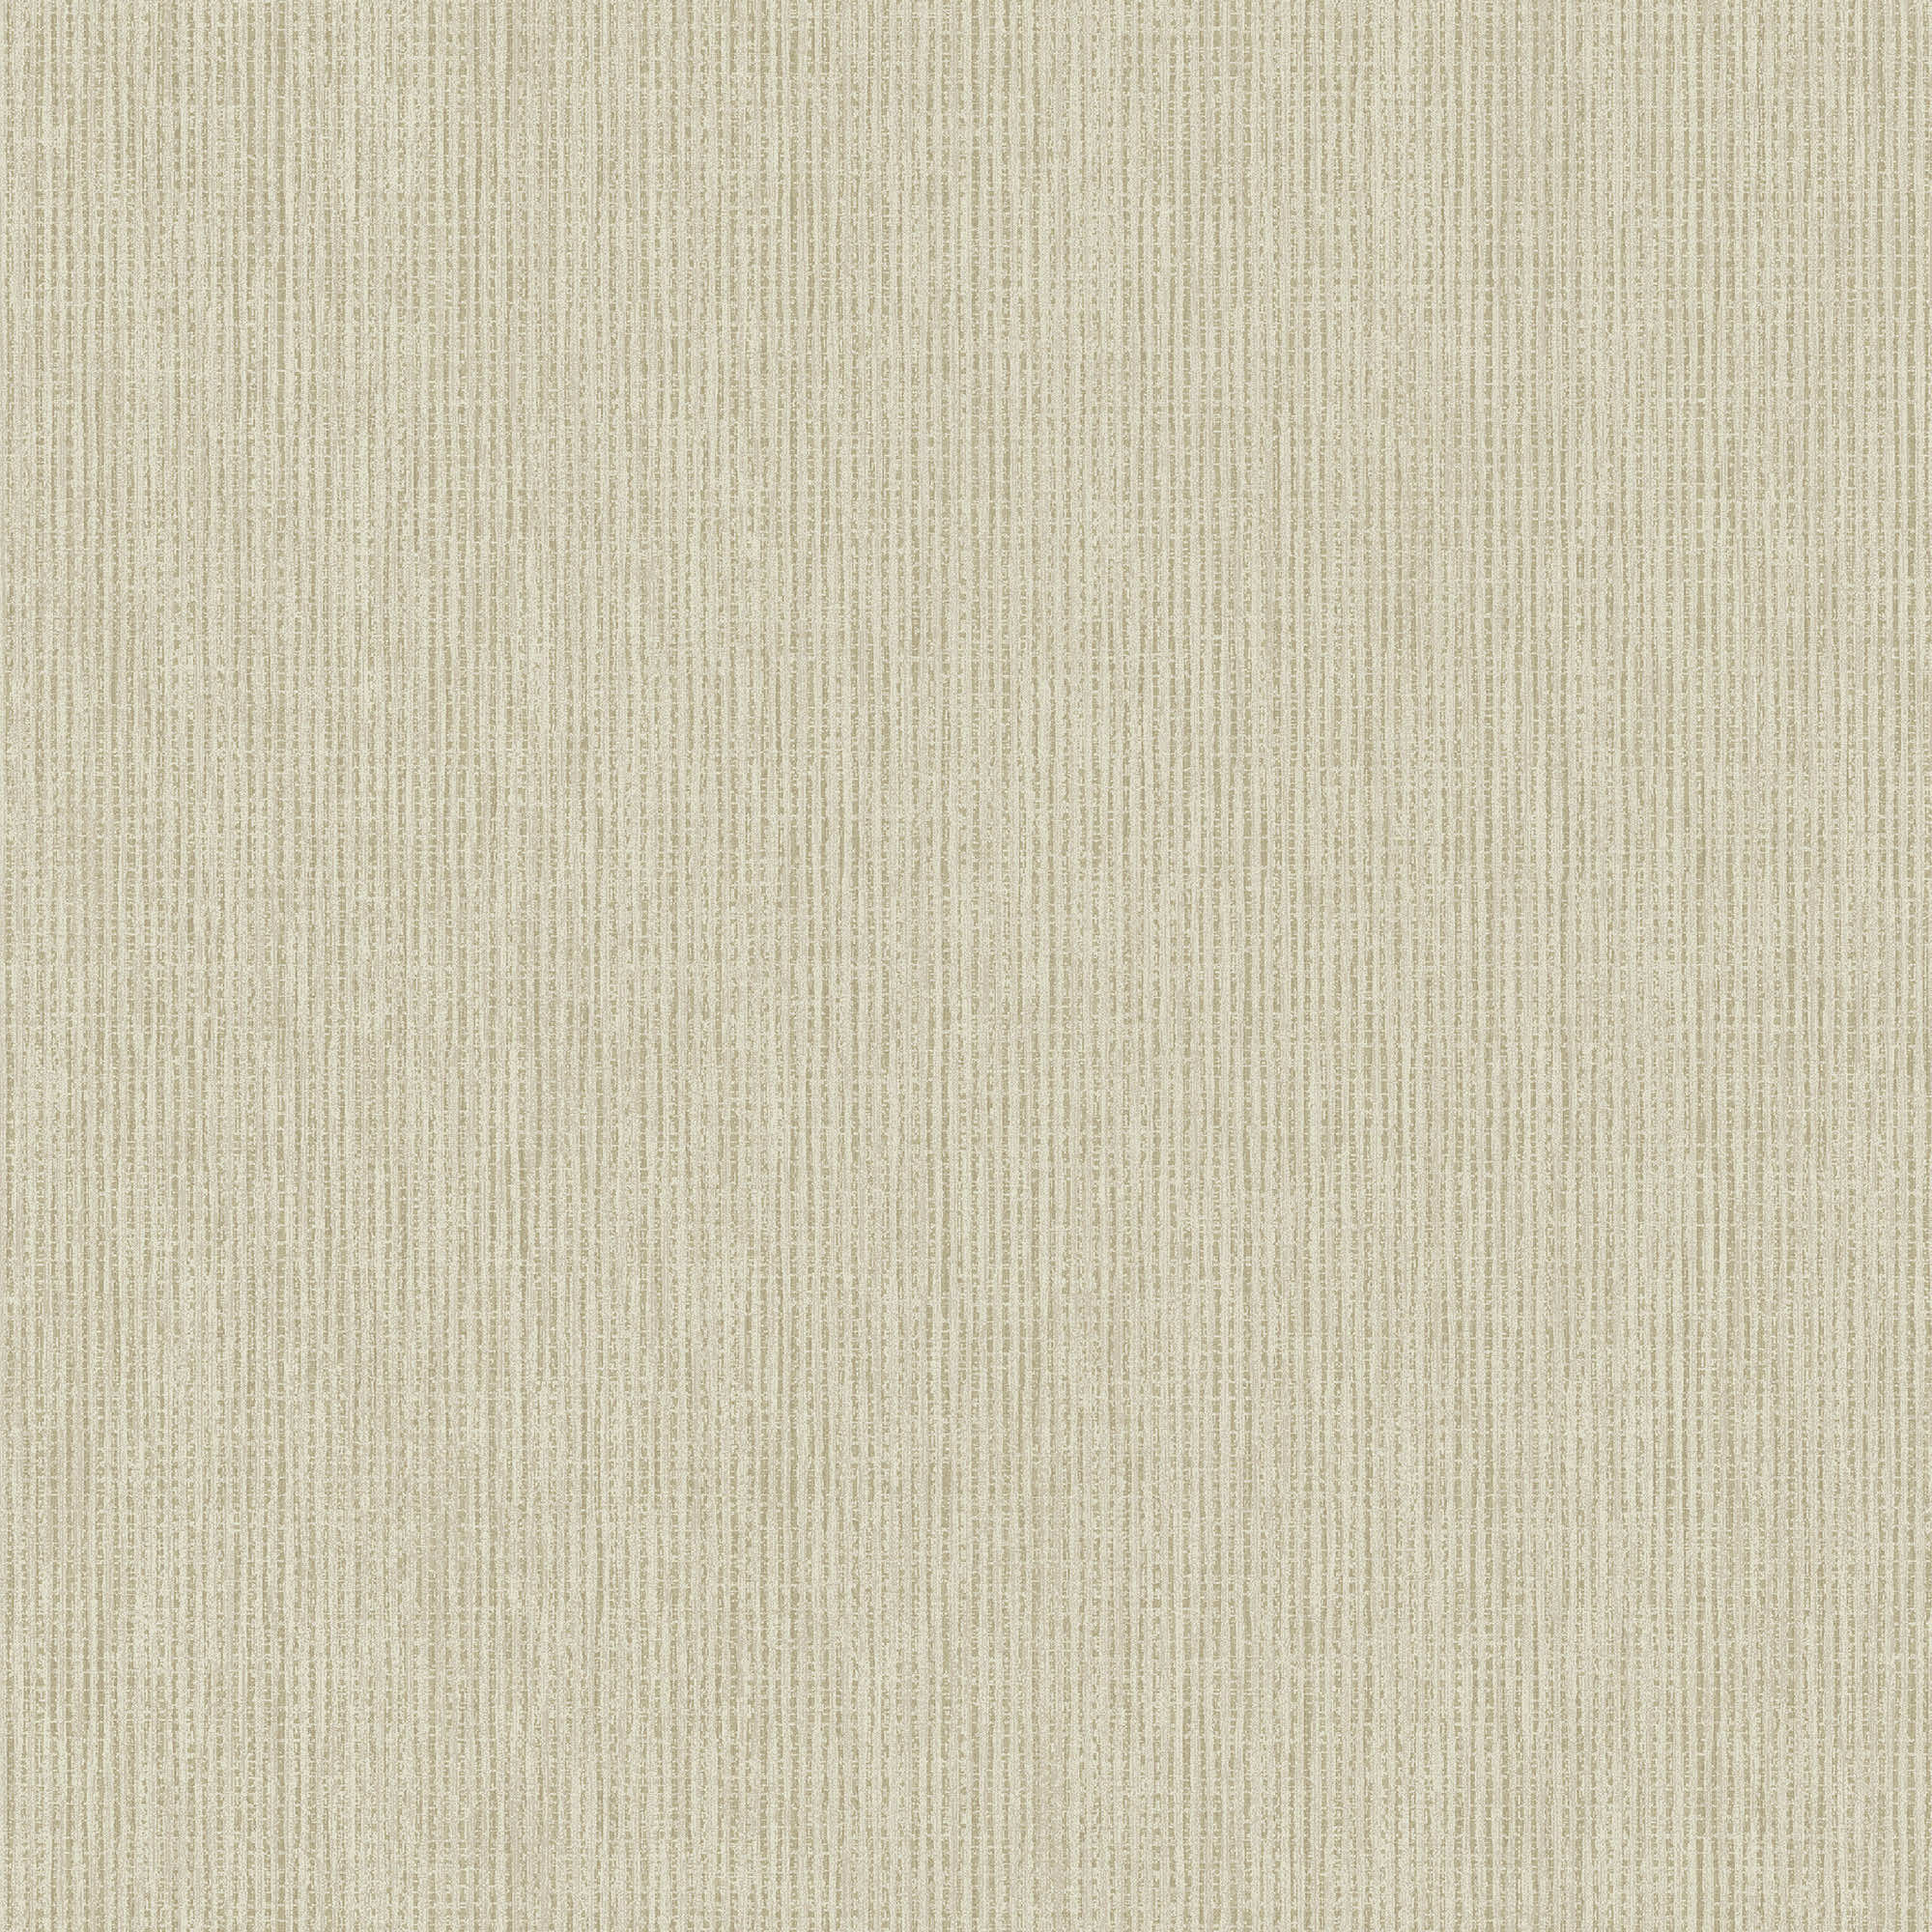 Holden Decor Linen Texture Cream Wallpaper - 10.05m x 53cm